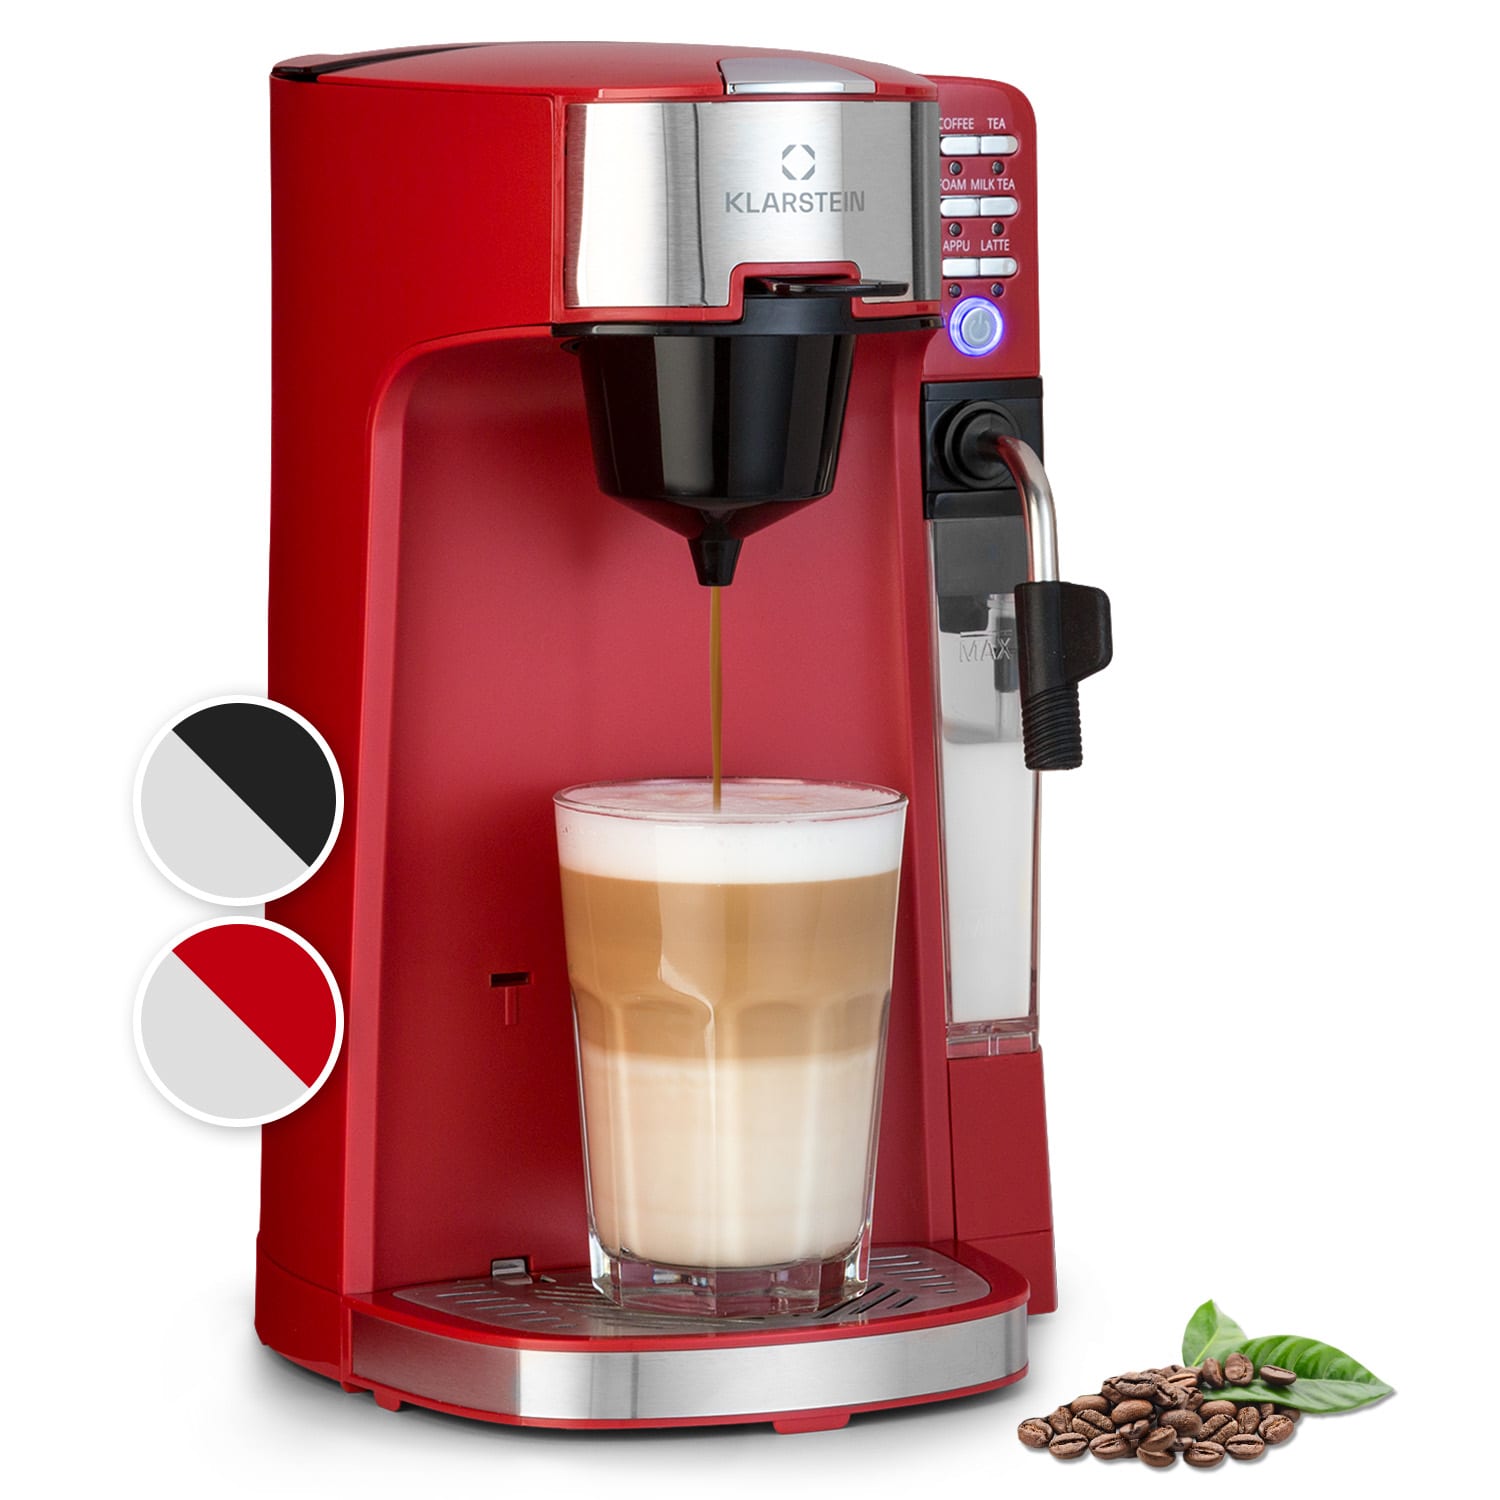 Klarstein baristomat 2 az 1-ben, teljesen automata kávéfőző, kávé, tea, tejhabosító, 6 program